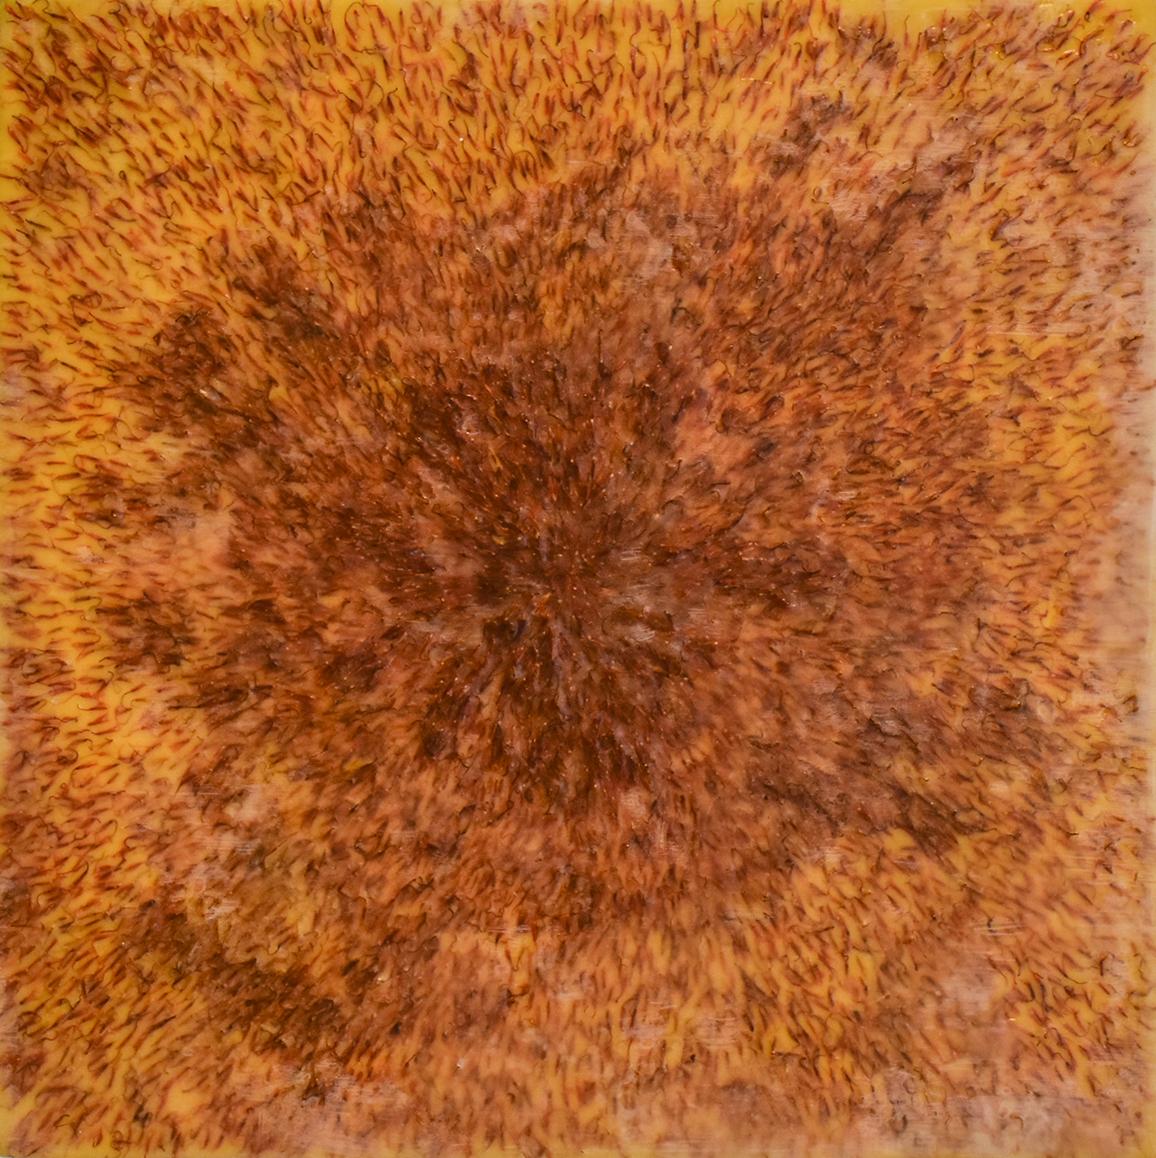 Safflower : Peinture à l'encaustique abstraite orange sang sur panneau avec fibres de safran